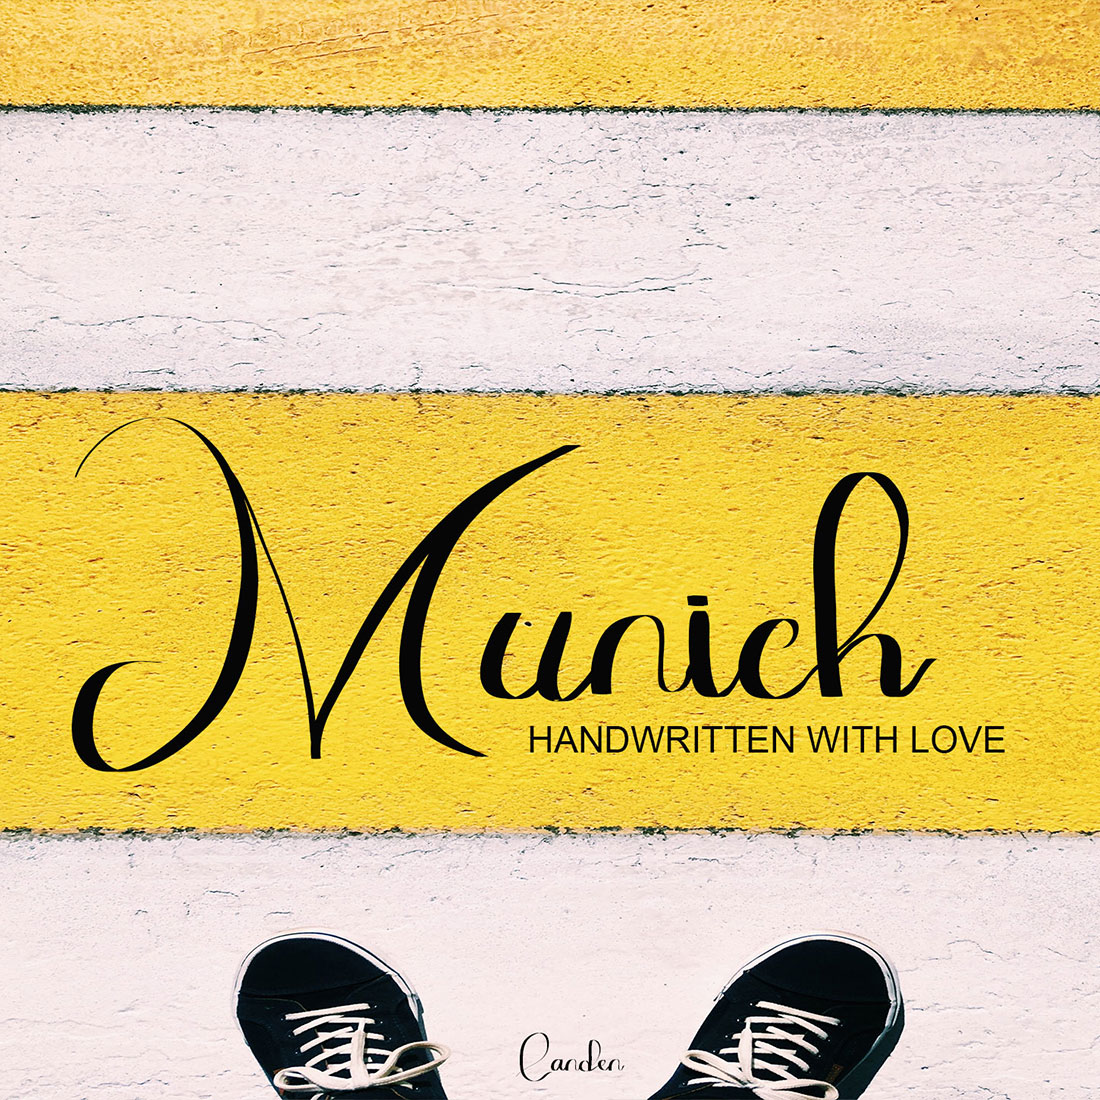 Munich Sans Serif Font image cover.